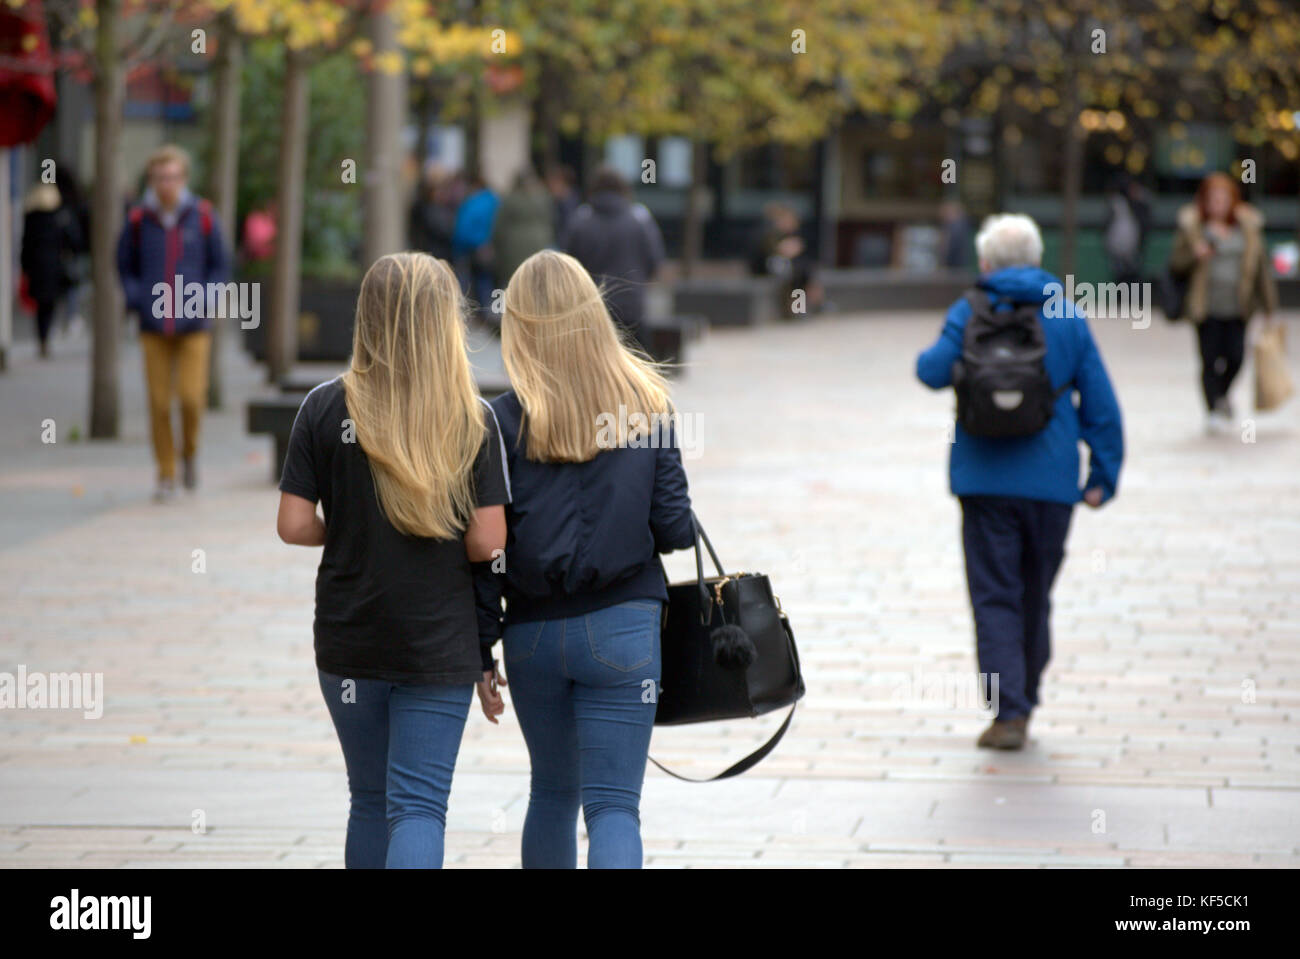 Deux jeunes soeurs filles blonde avec les cheveux droits des adolescents avec sacs à main vu de derrière Banque D'Images